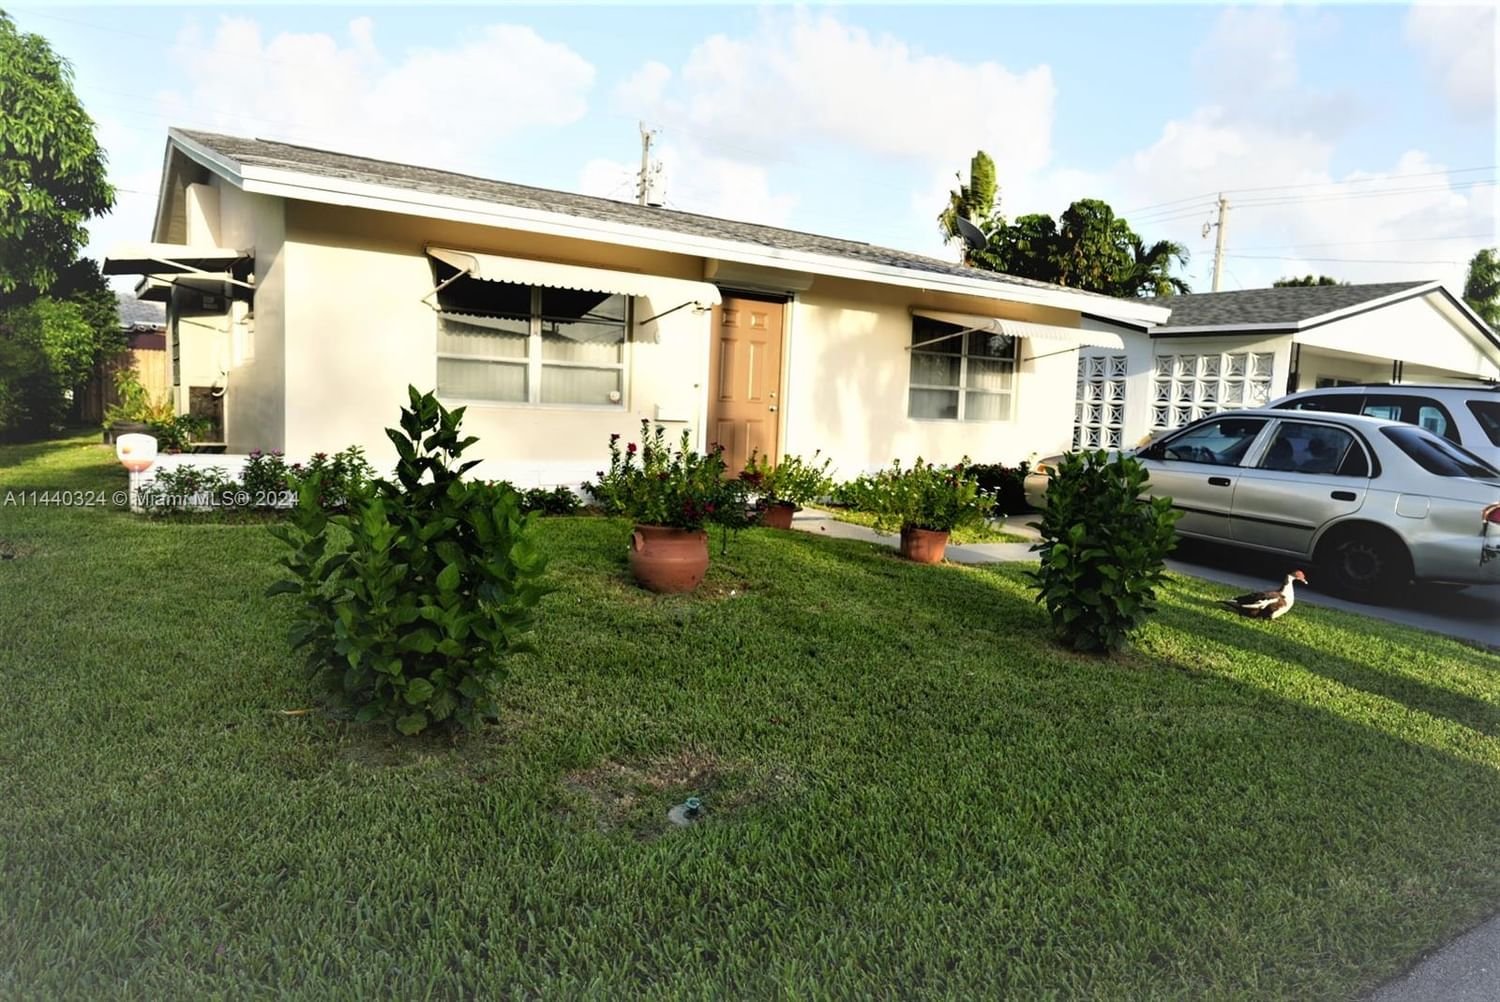 Real estate property located at 4902 26th Way, Broward County, TAMARAC LAKES SOUTH, Tamarac, FL